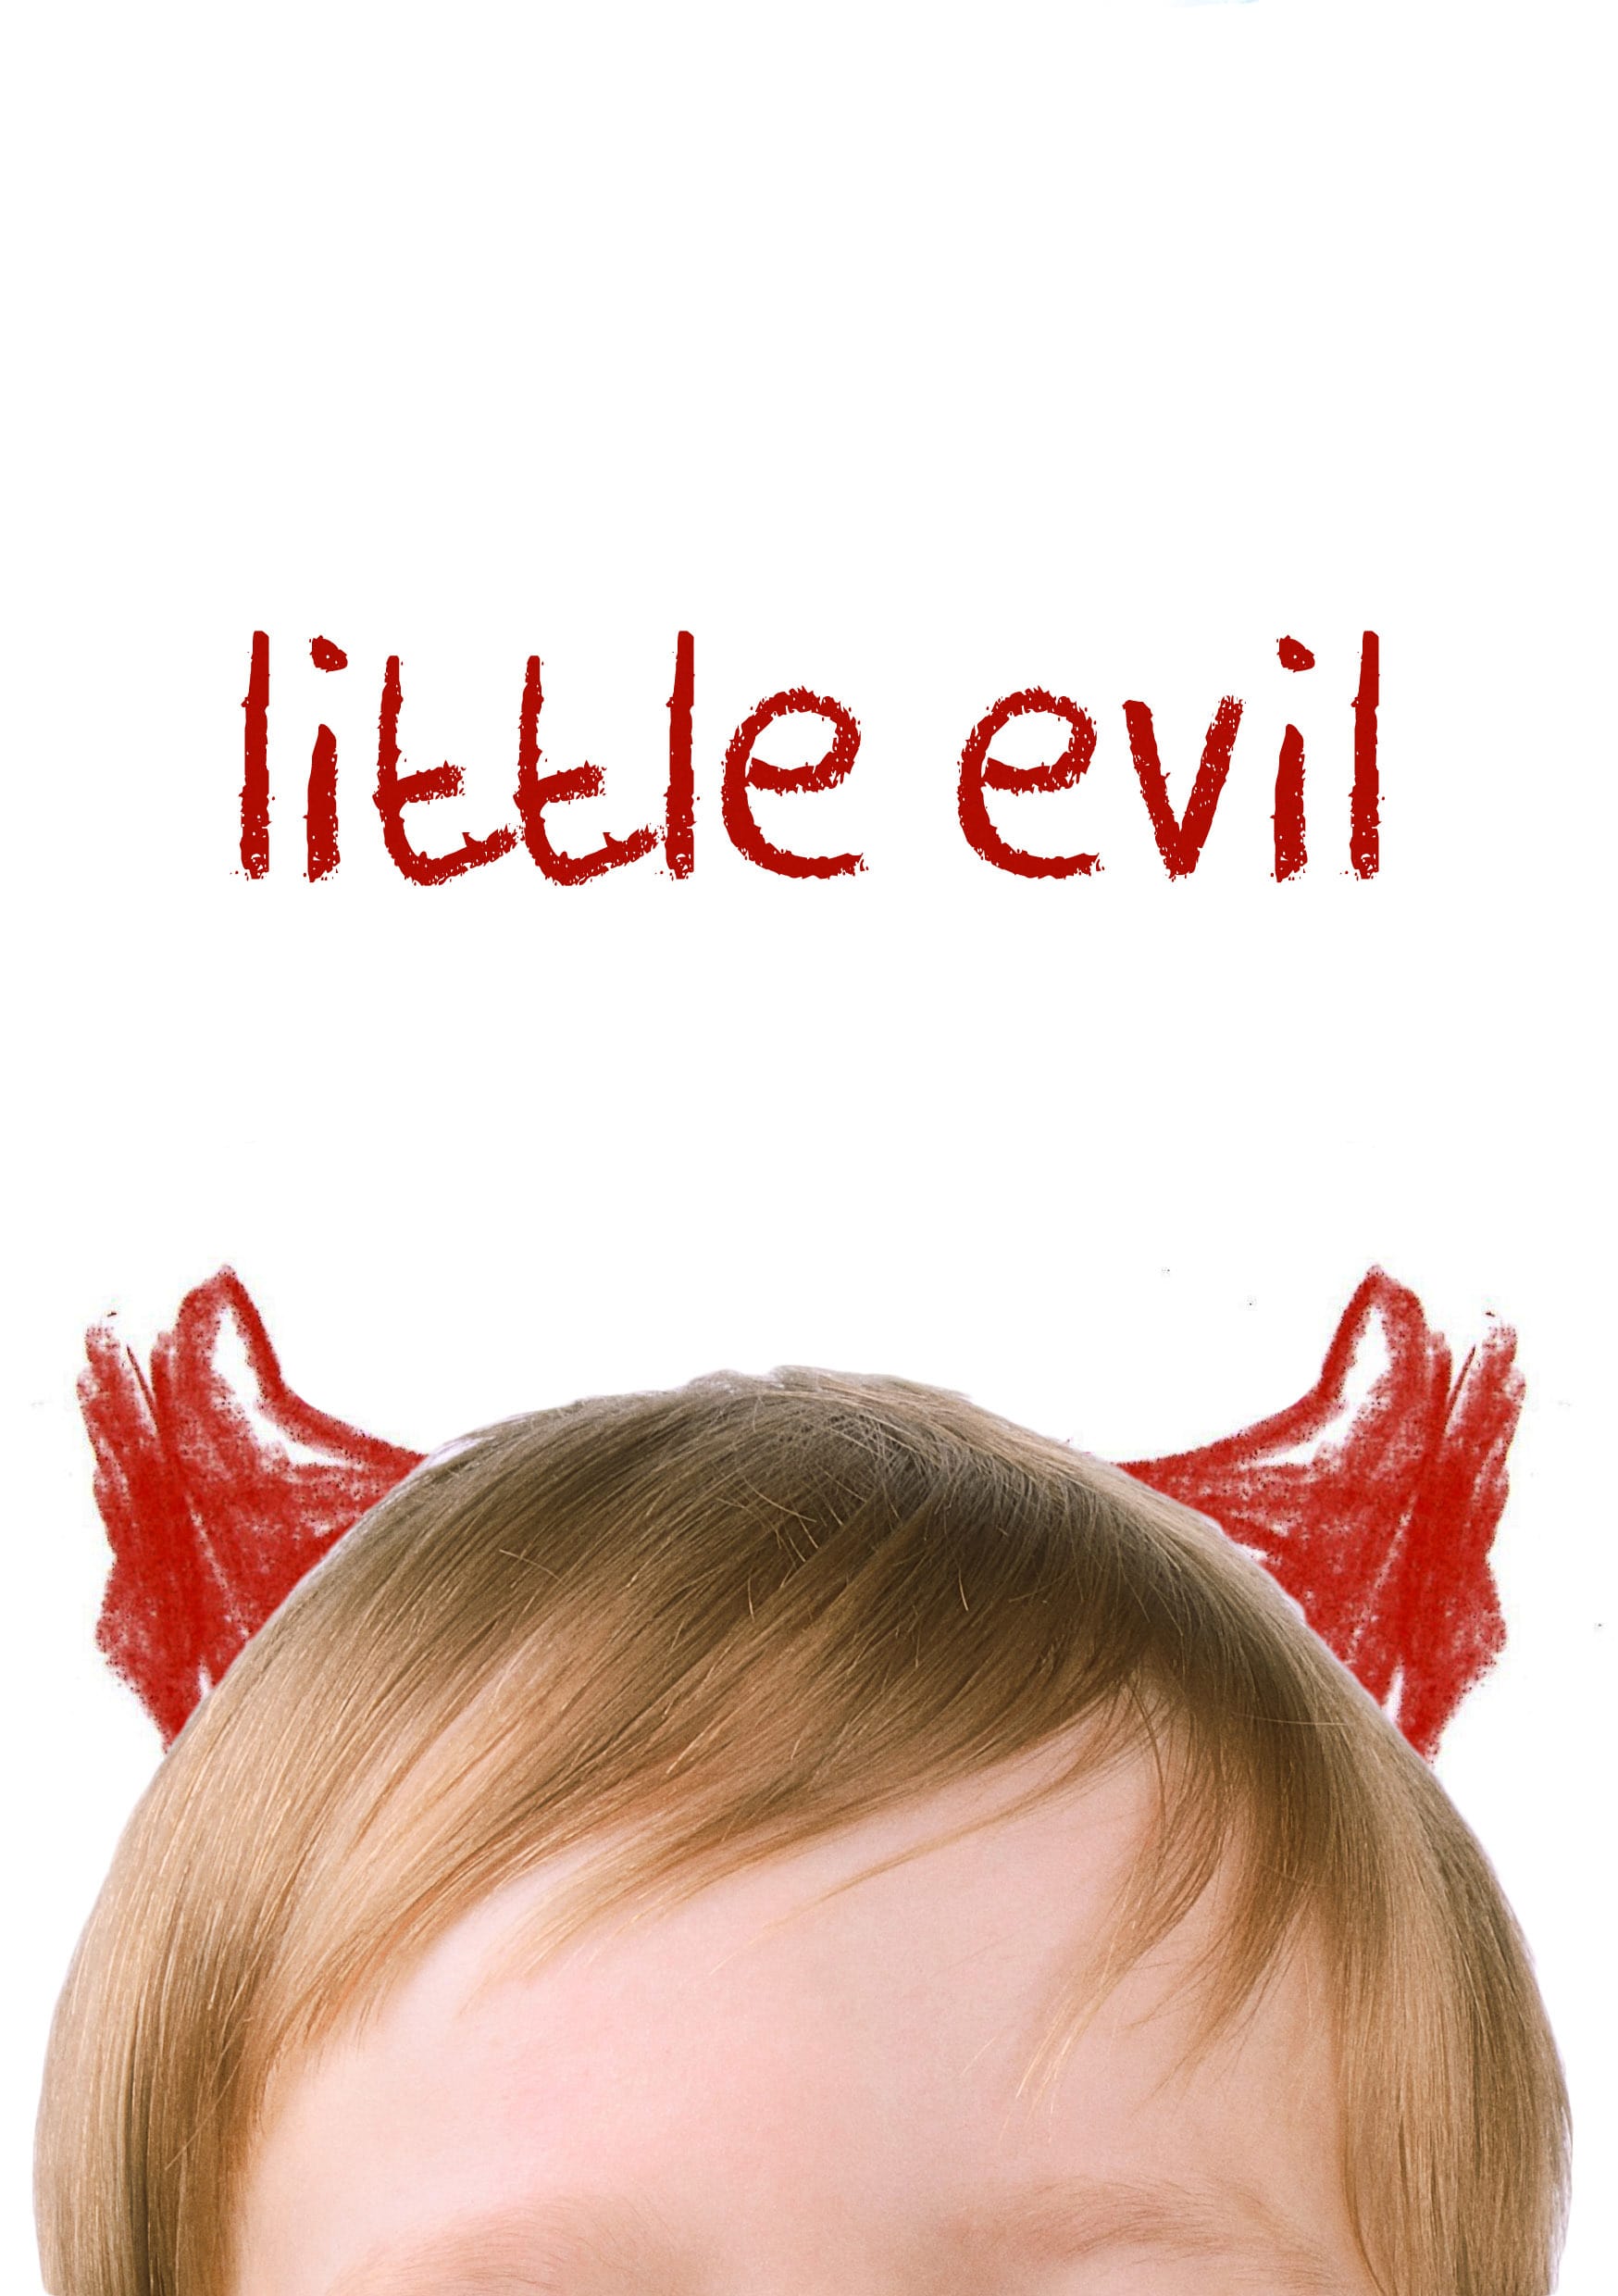 Little Evil 2017